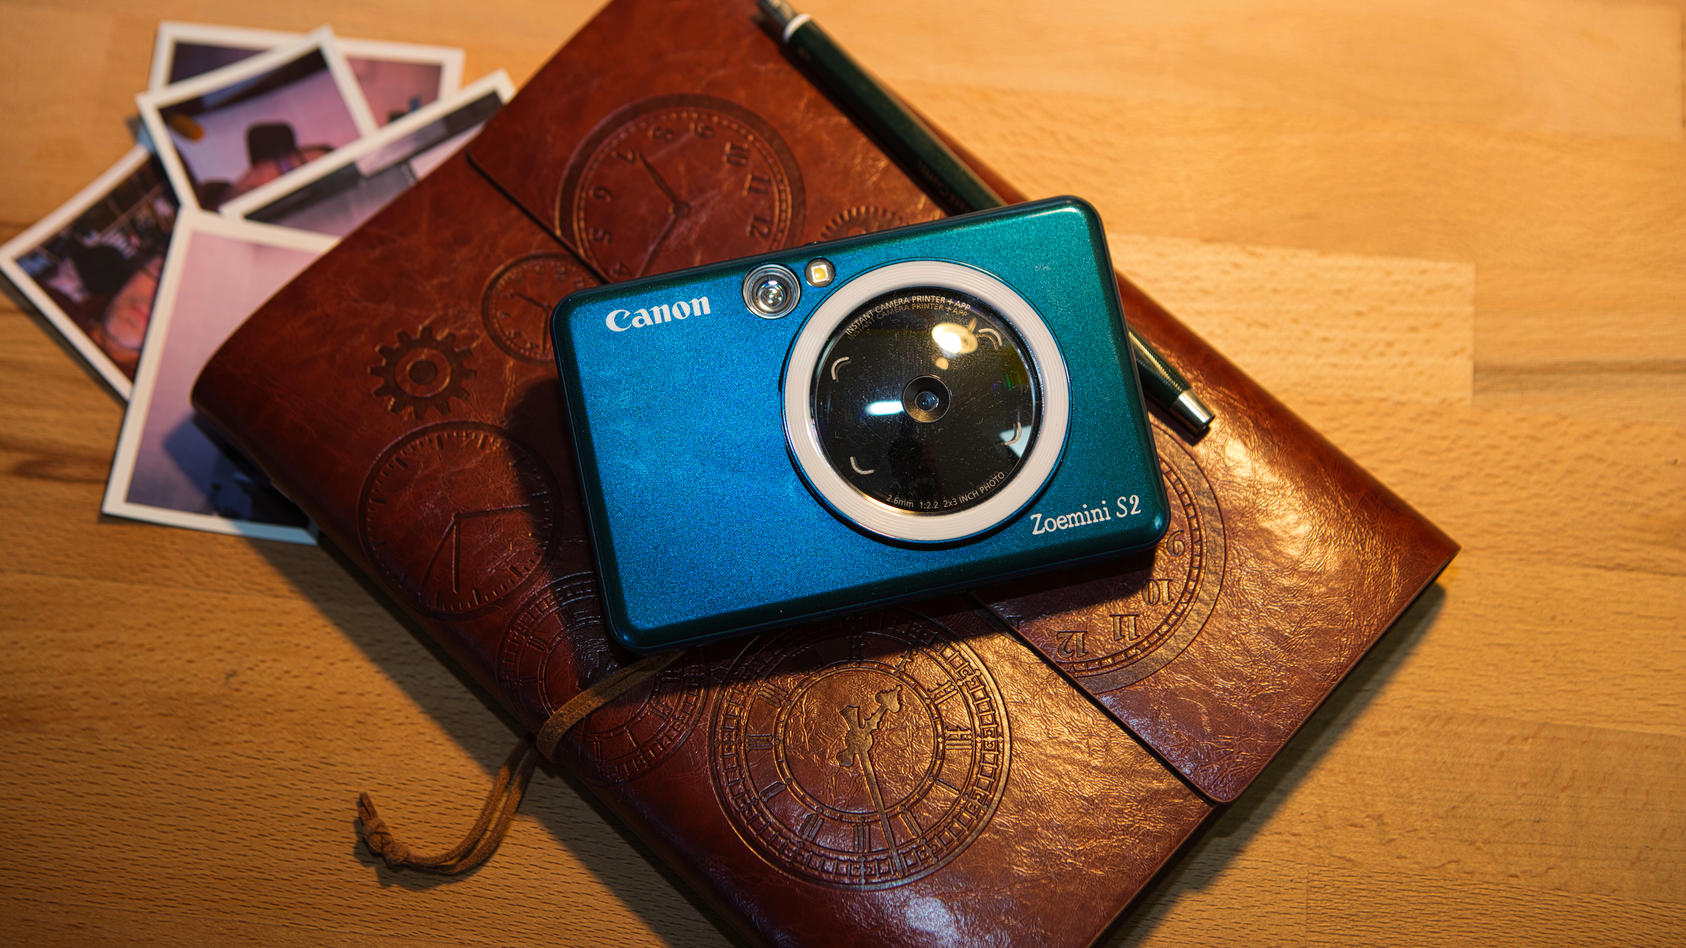 Getestet: Canon Zoemini S2 - Sofortbildkamera im Hosentaschenformat